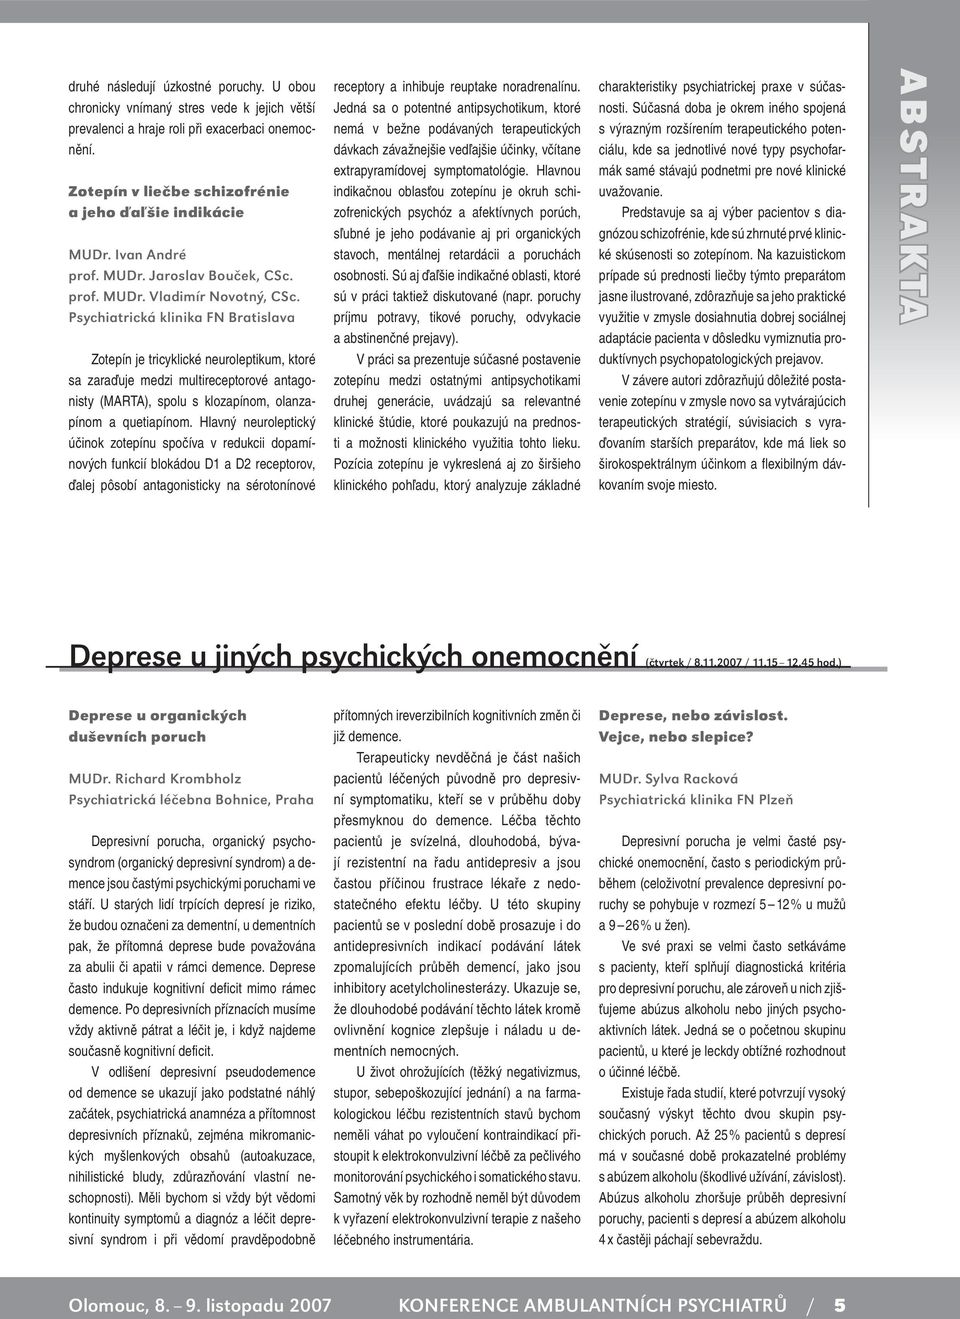 Psychiatrická klinika FN Bratislava Zotepín je tricyklické neuroleptikum, ktoré sa zaraďuje medzi multireceptorové antagonisty (MARTA), spolu s klozapínom, olanzapínom a quetiapínom.